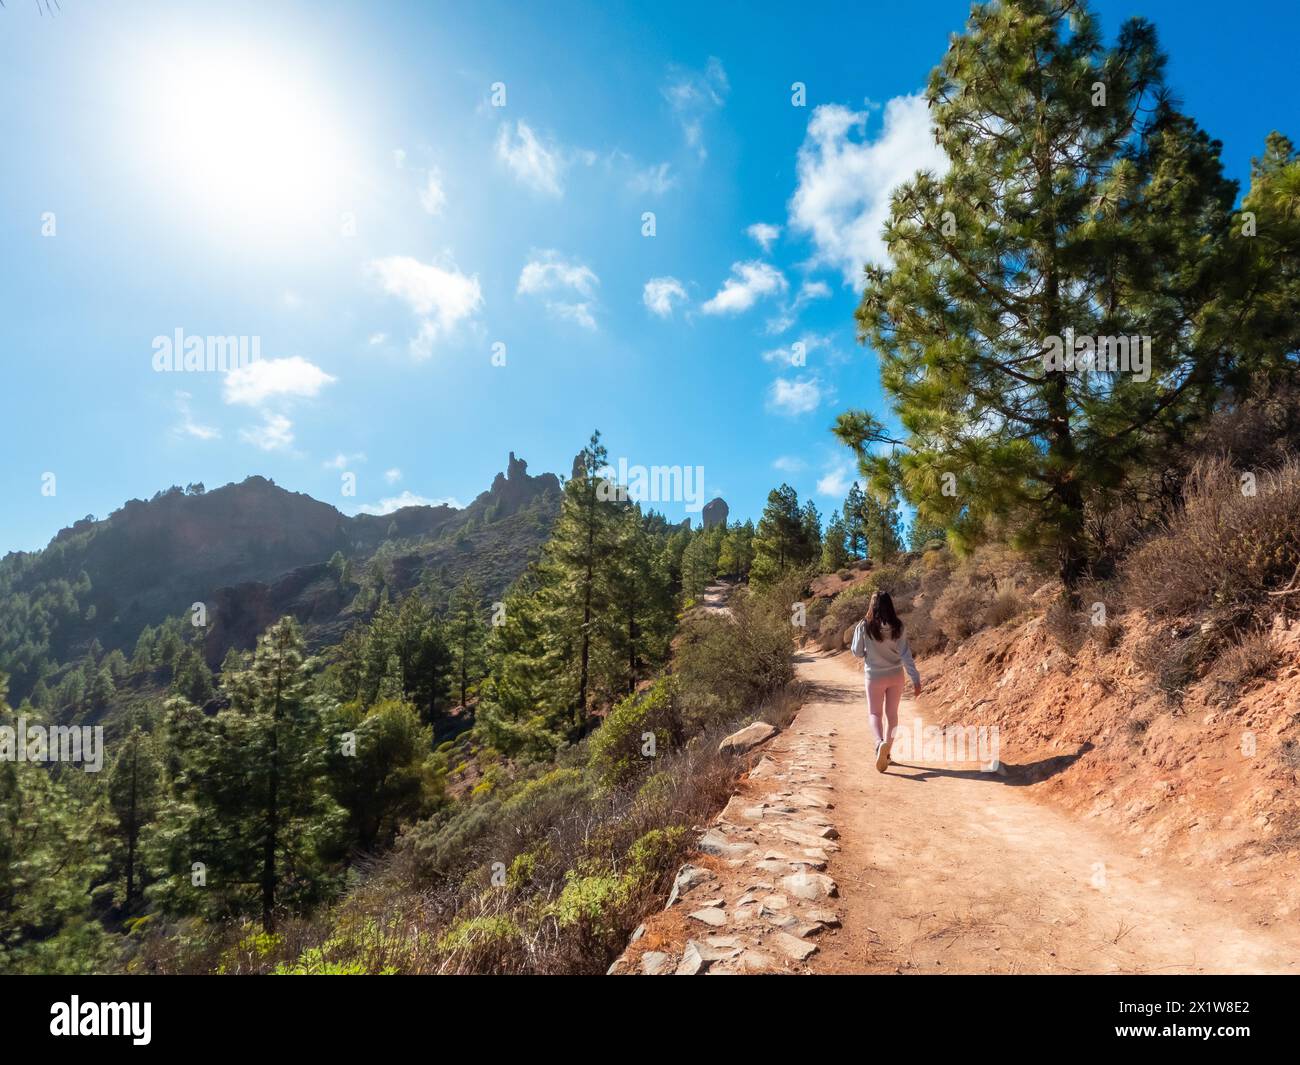 Una donna sta camminando su un sentiero sterrato in una foresta. Il cielo è blu e il sole splende Foto Stock